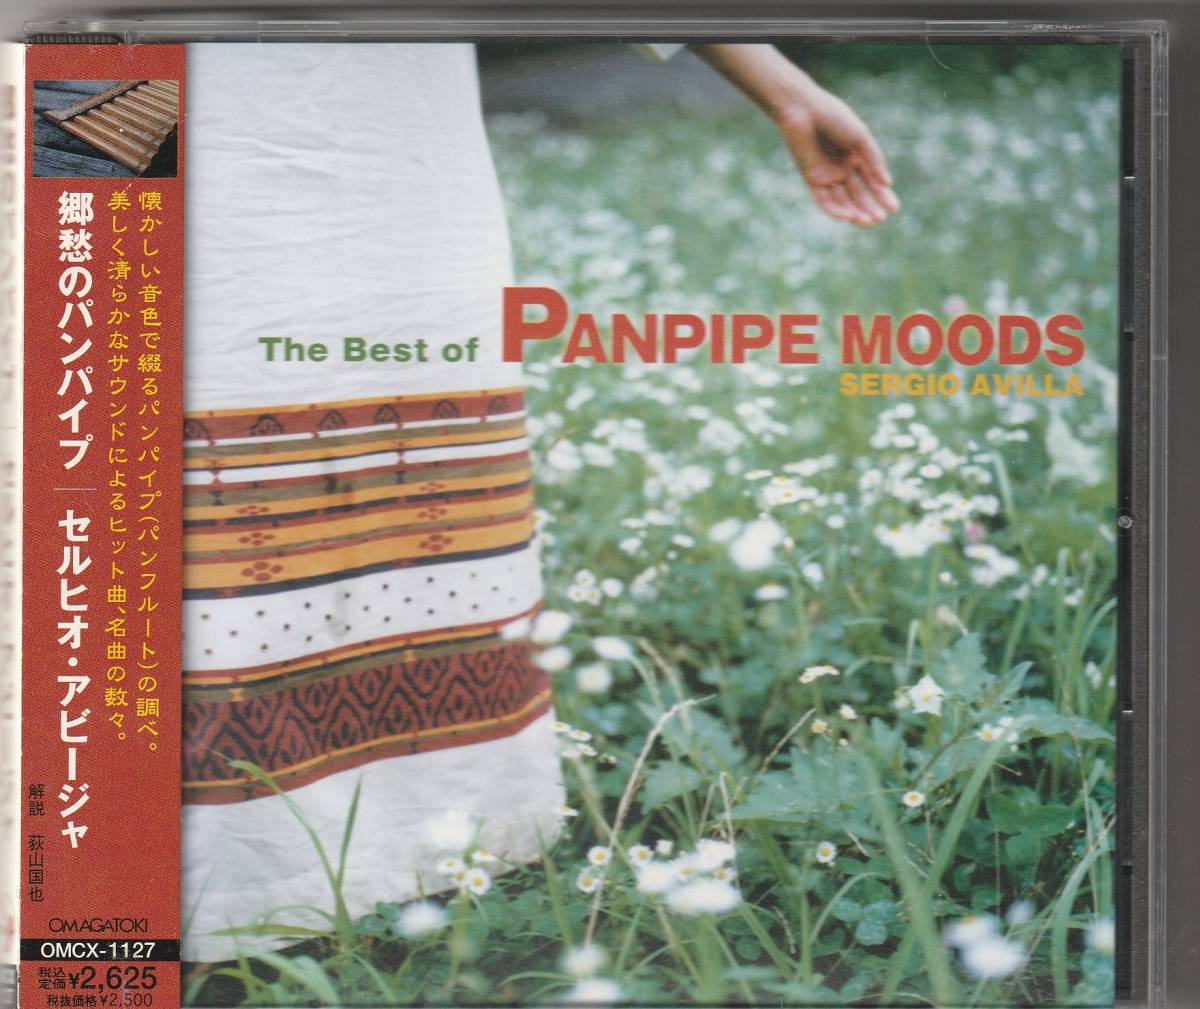 セルヒオ・アビージャ / The Very Best of PANPIPE MOODS 郷愁のパンパイプ_画像1